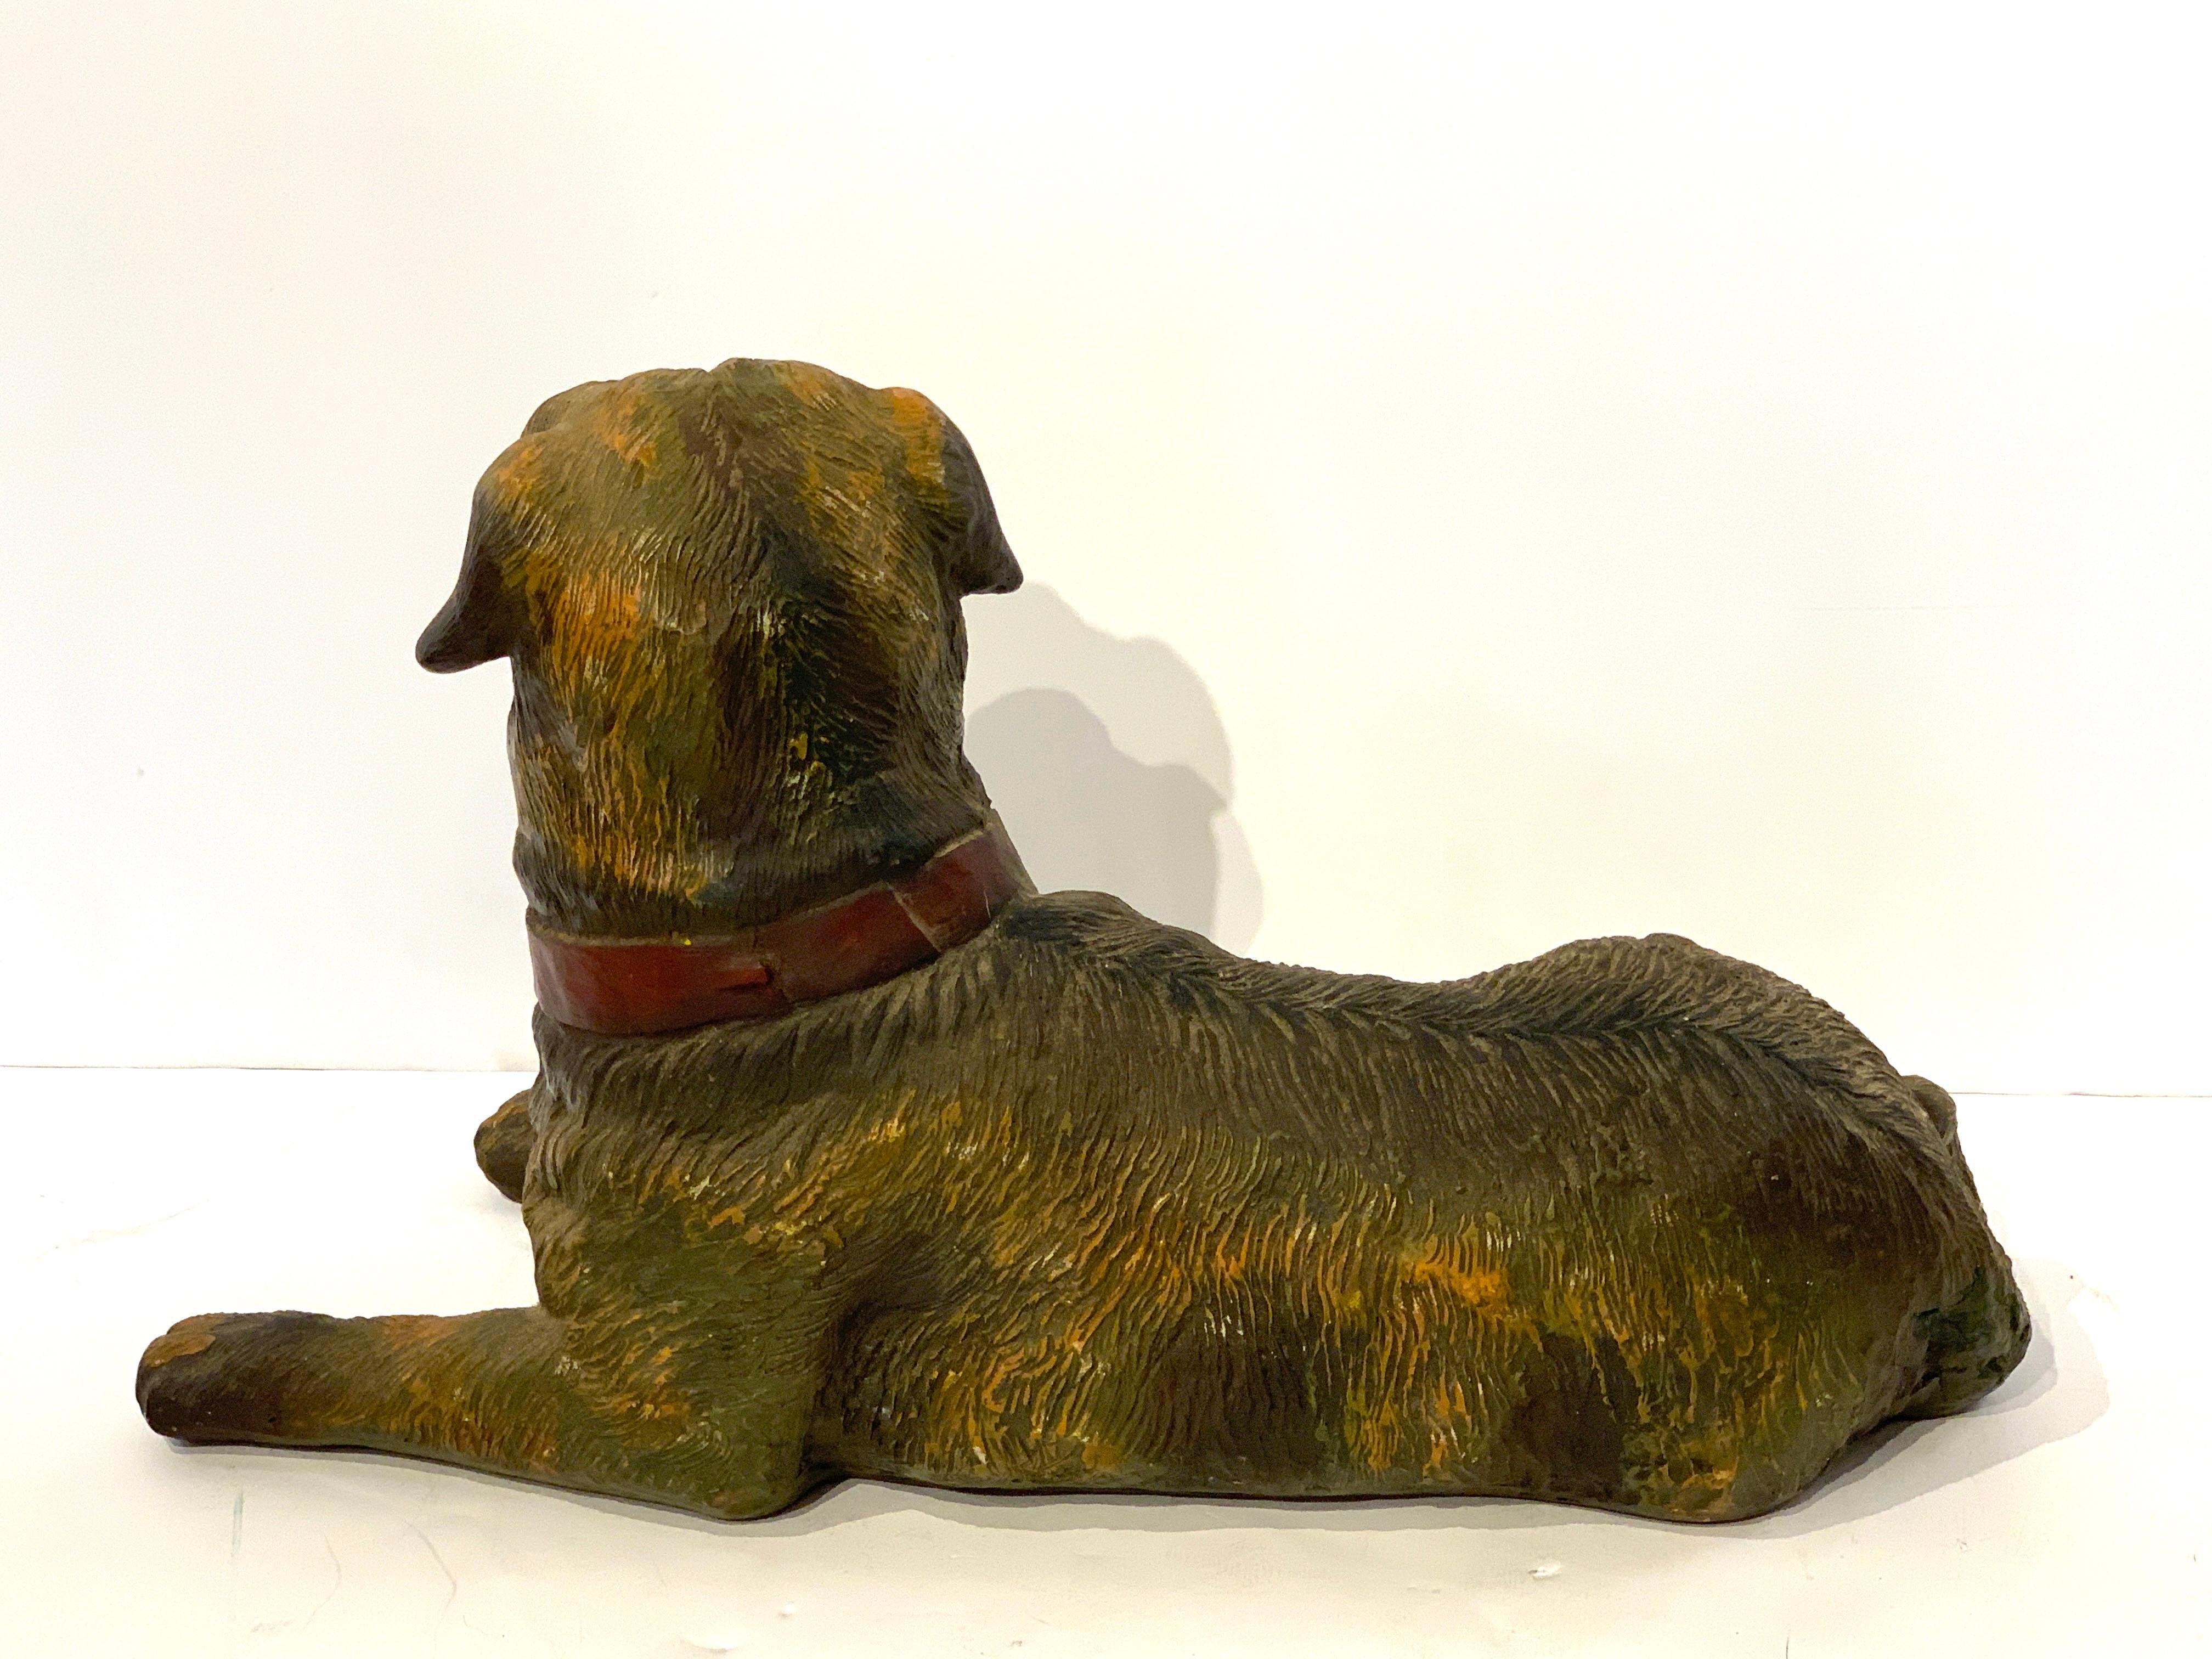 Polychromed English Style Recumbent Pug Dog with Glass Eyes